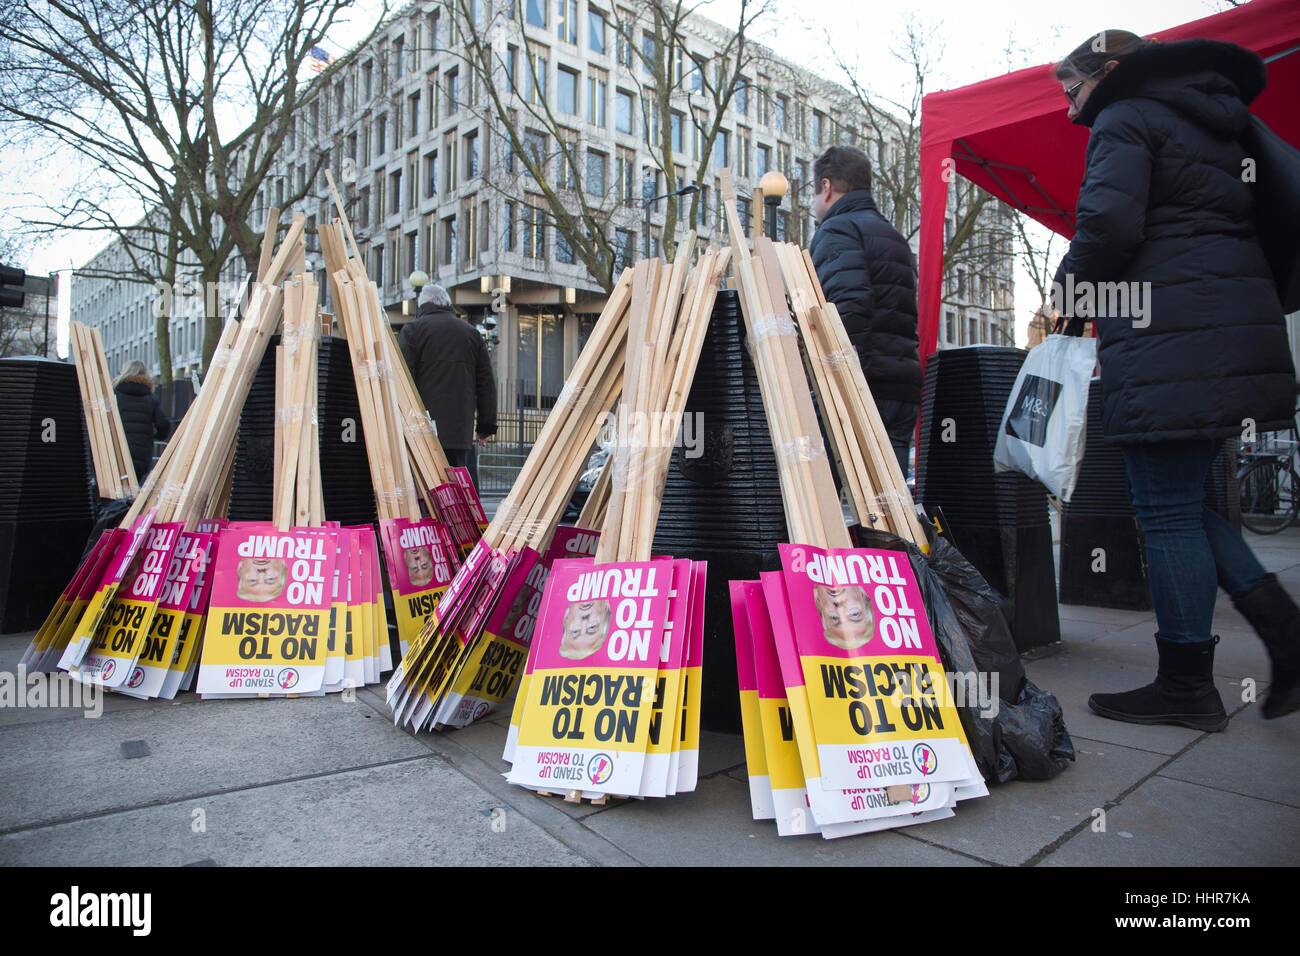 Londres, Royaume-Uni. 20 Jan, 2017. Anti-Trump protester US Embassy, Grosvenor Square, London, UK. ce soir protester contre l'investiture du président américain Donald Trump à l'extérieur de l'ambassade américaine de Londres Banque D'Images